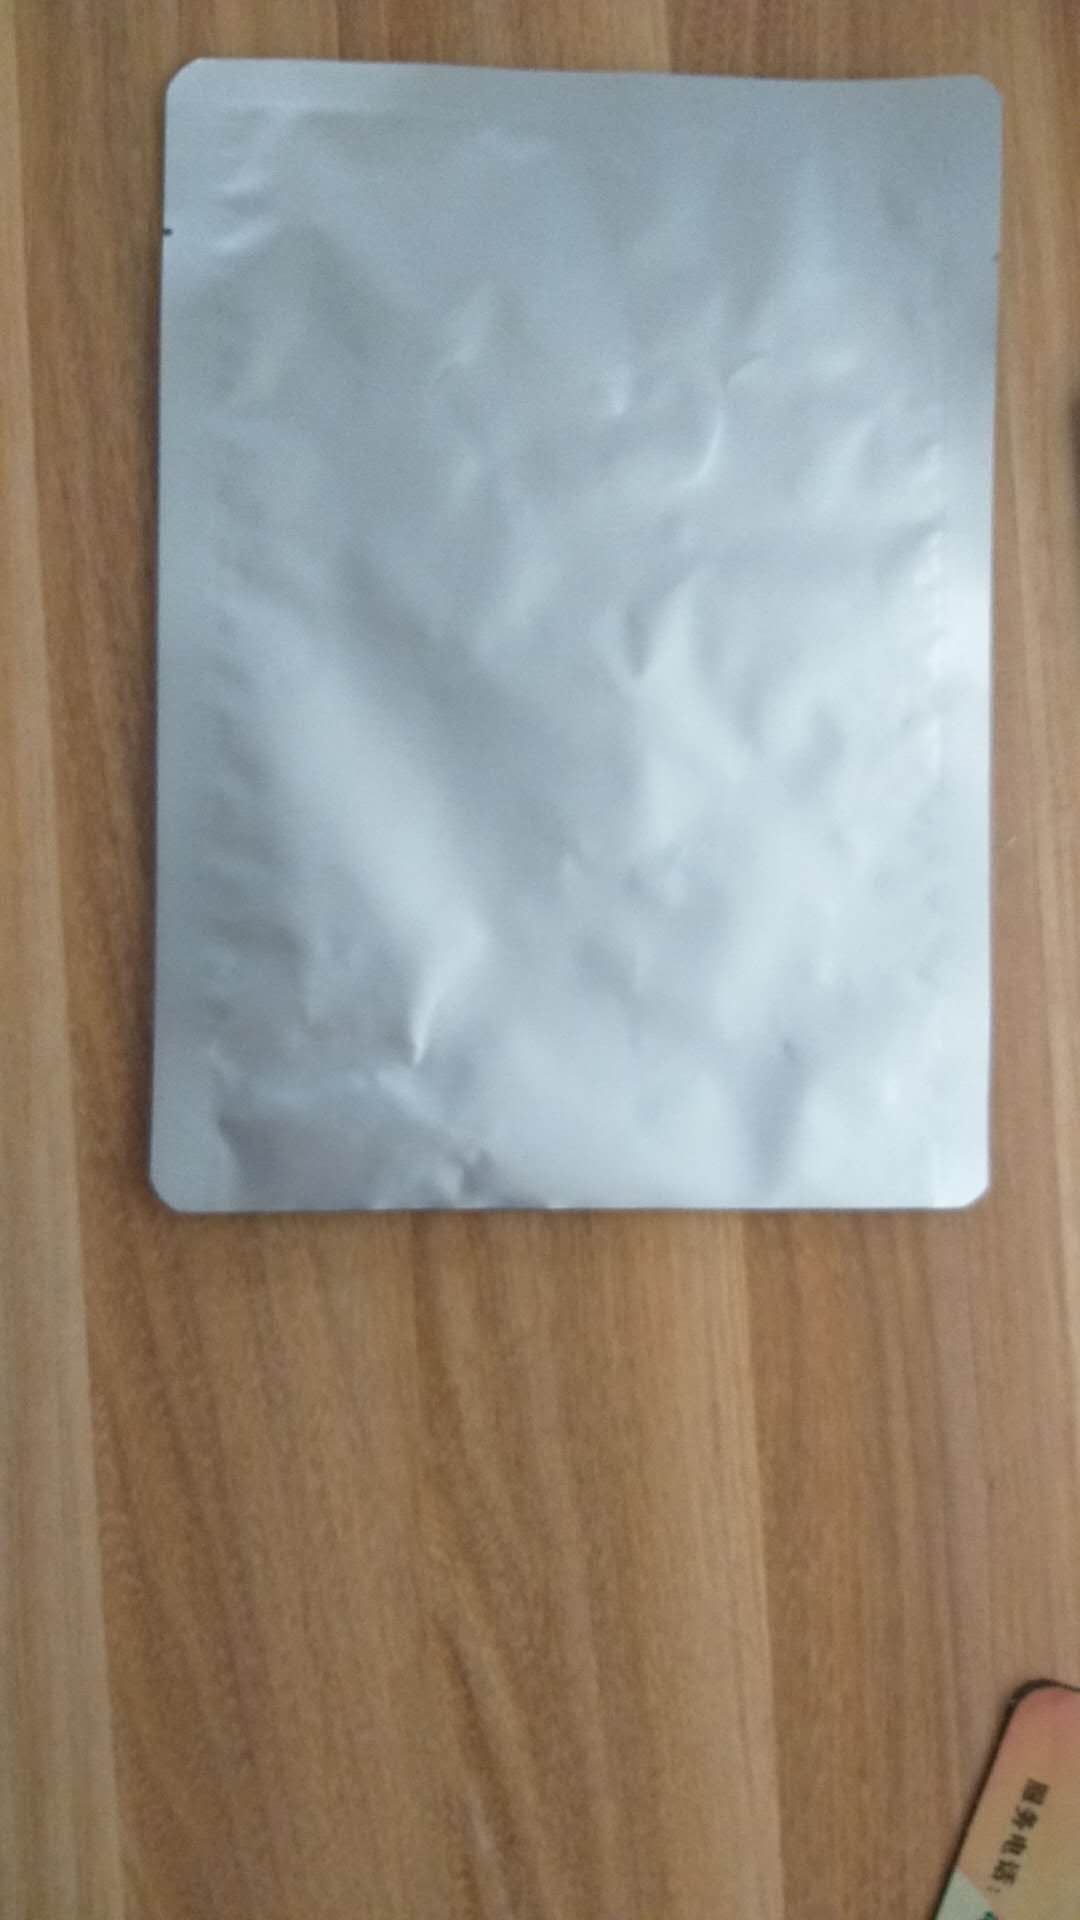 1kg aluminum foil bag.jpg